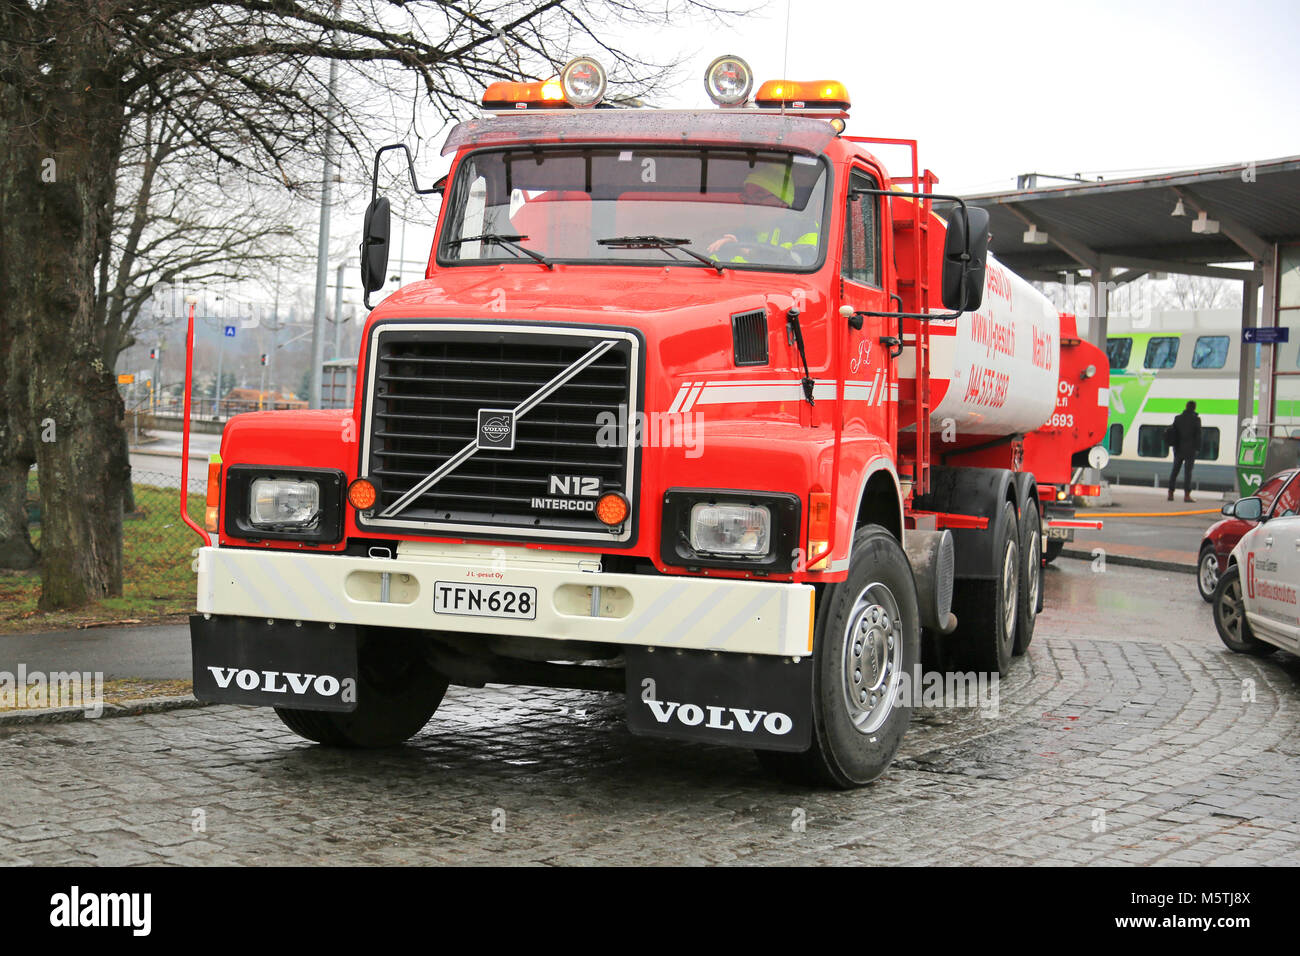 SALO, FINLANDE - le 12 avril 2015 : Volvo N12 année 1988 camion citerne utilisée pour le lavage industriel des services. Le réservoir d'eau a une capacité de 15000 litres. Banque D'Images